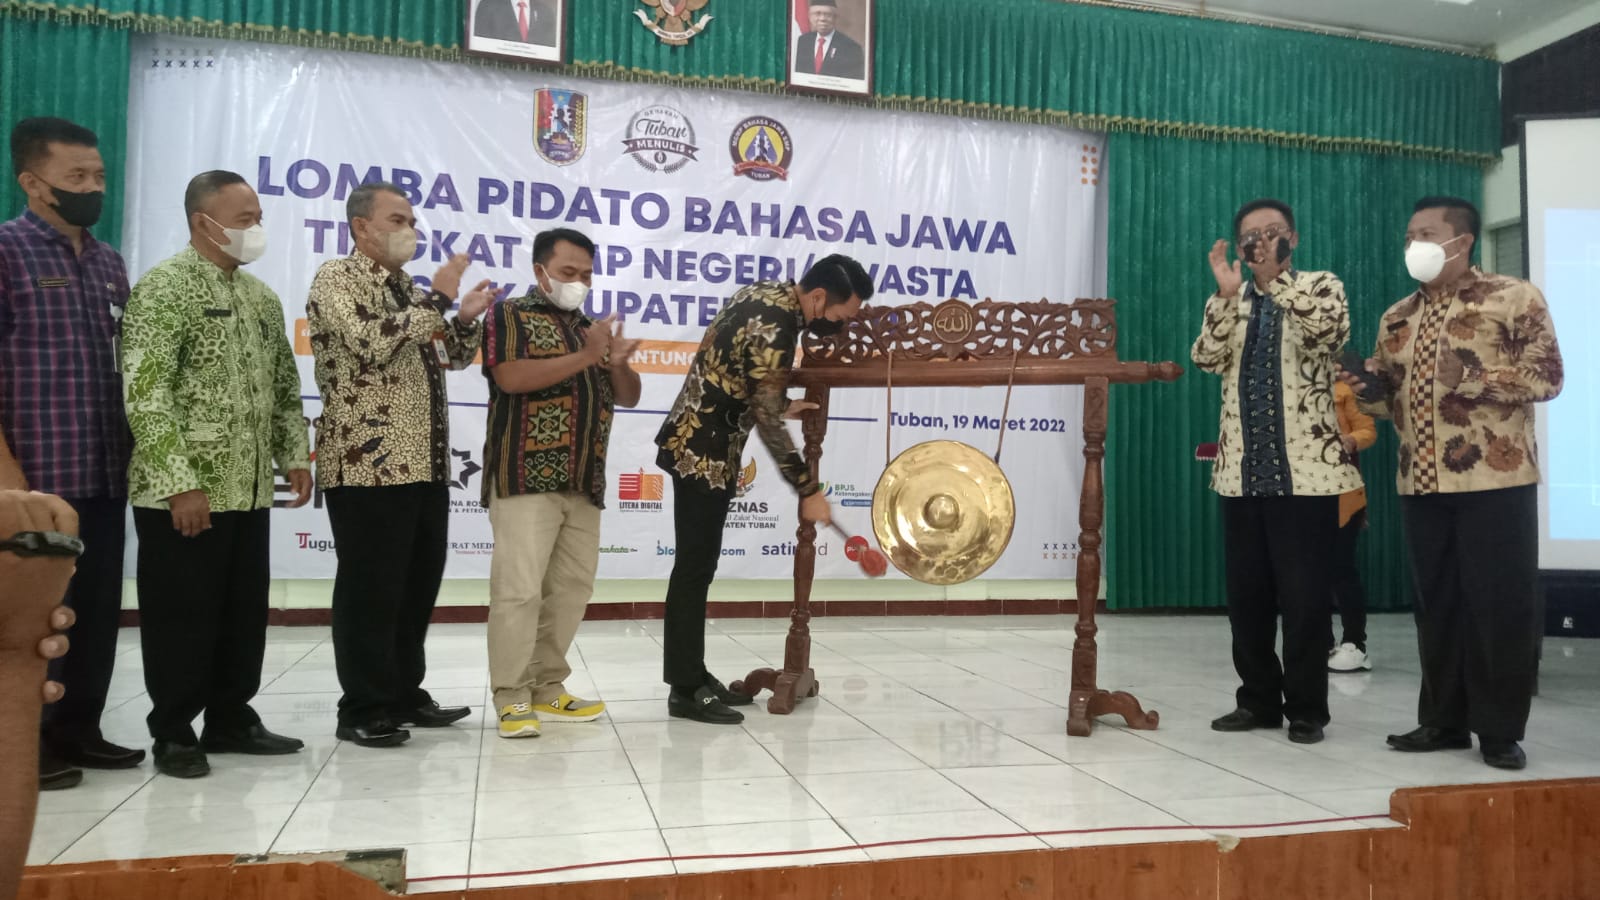 Dukung Program Pemkab Tuban, GTM Gelar Lomba Pidato Bahasa Jawa